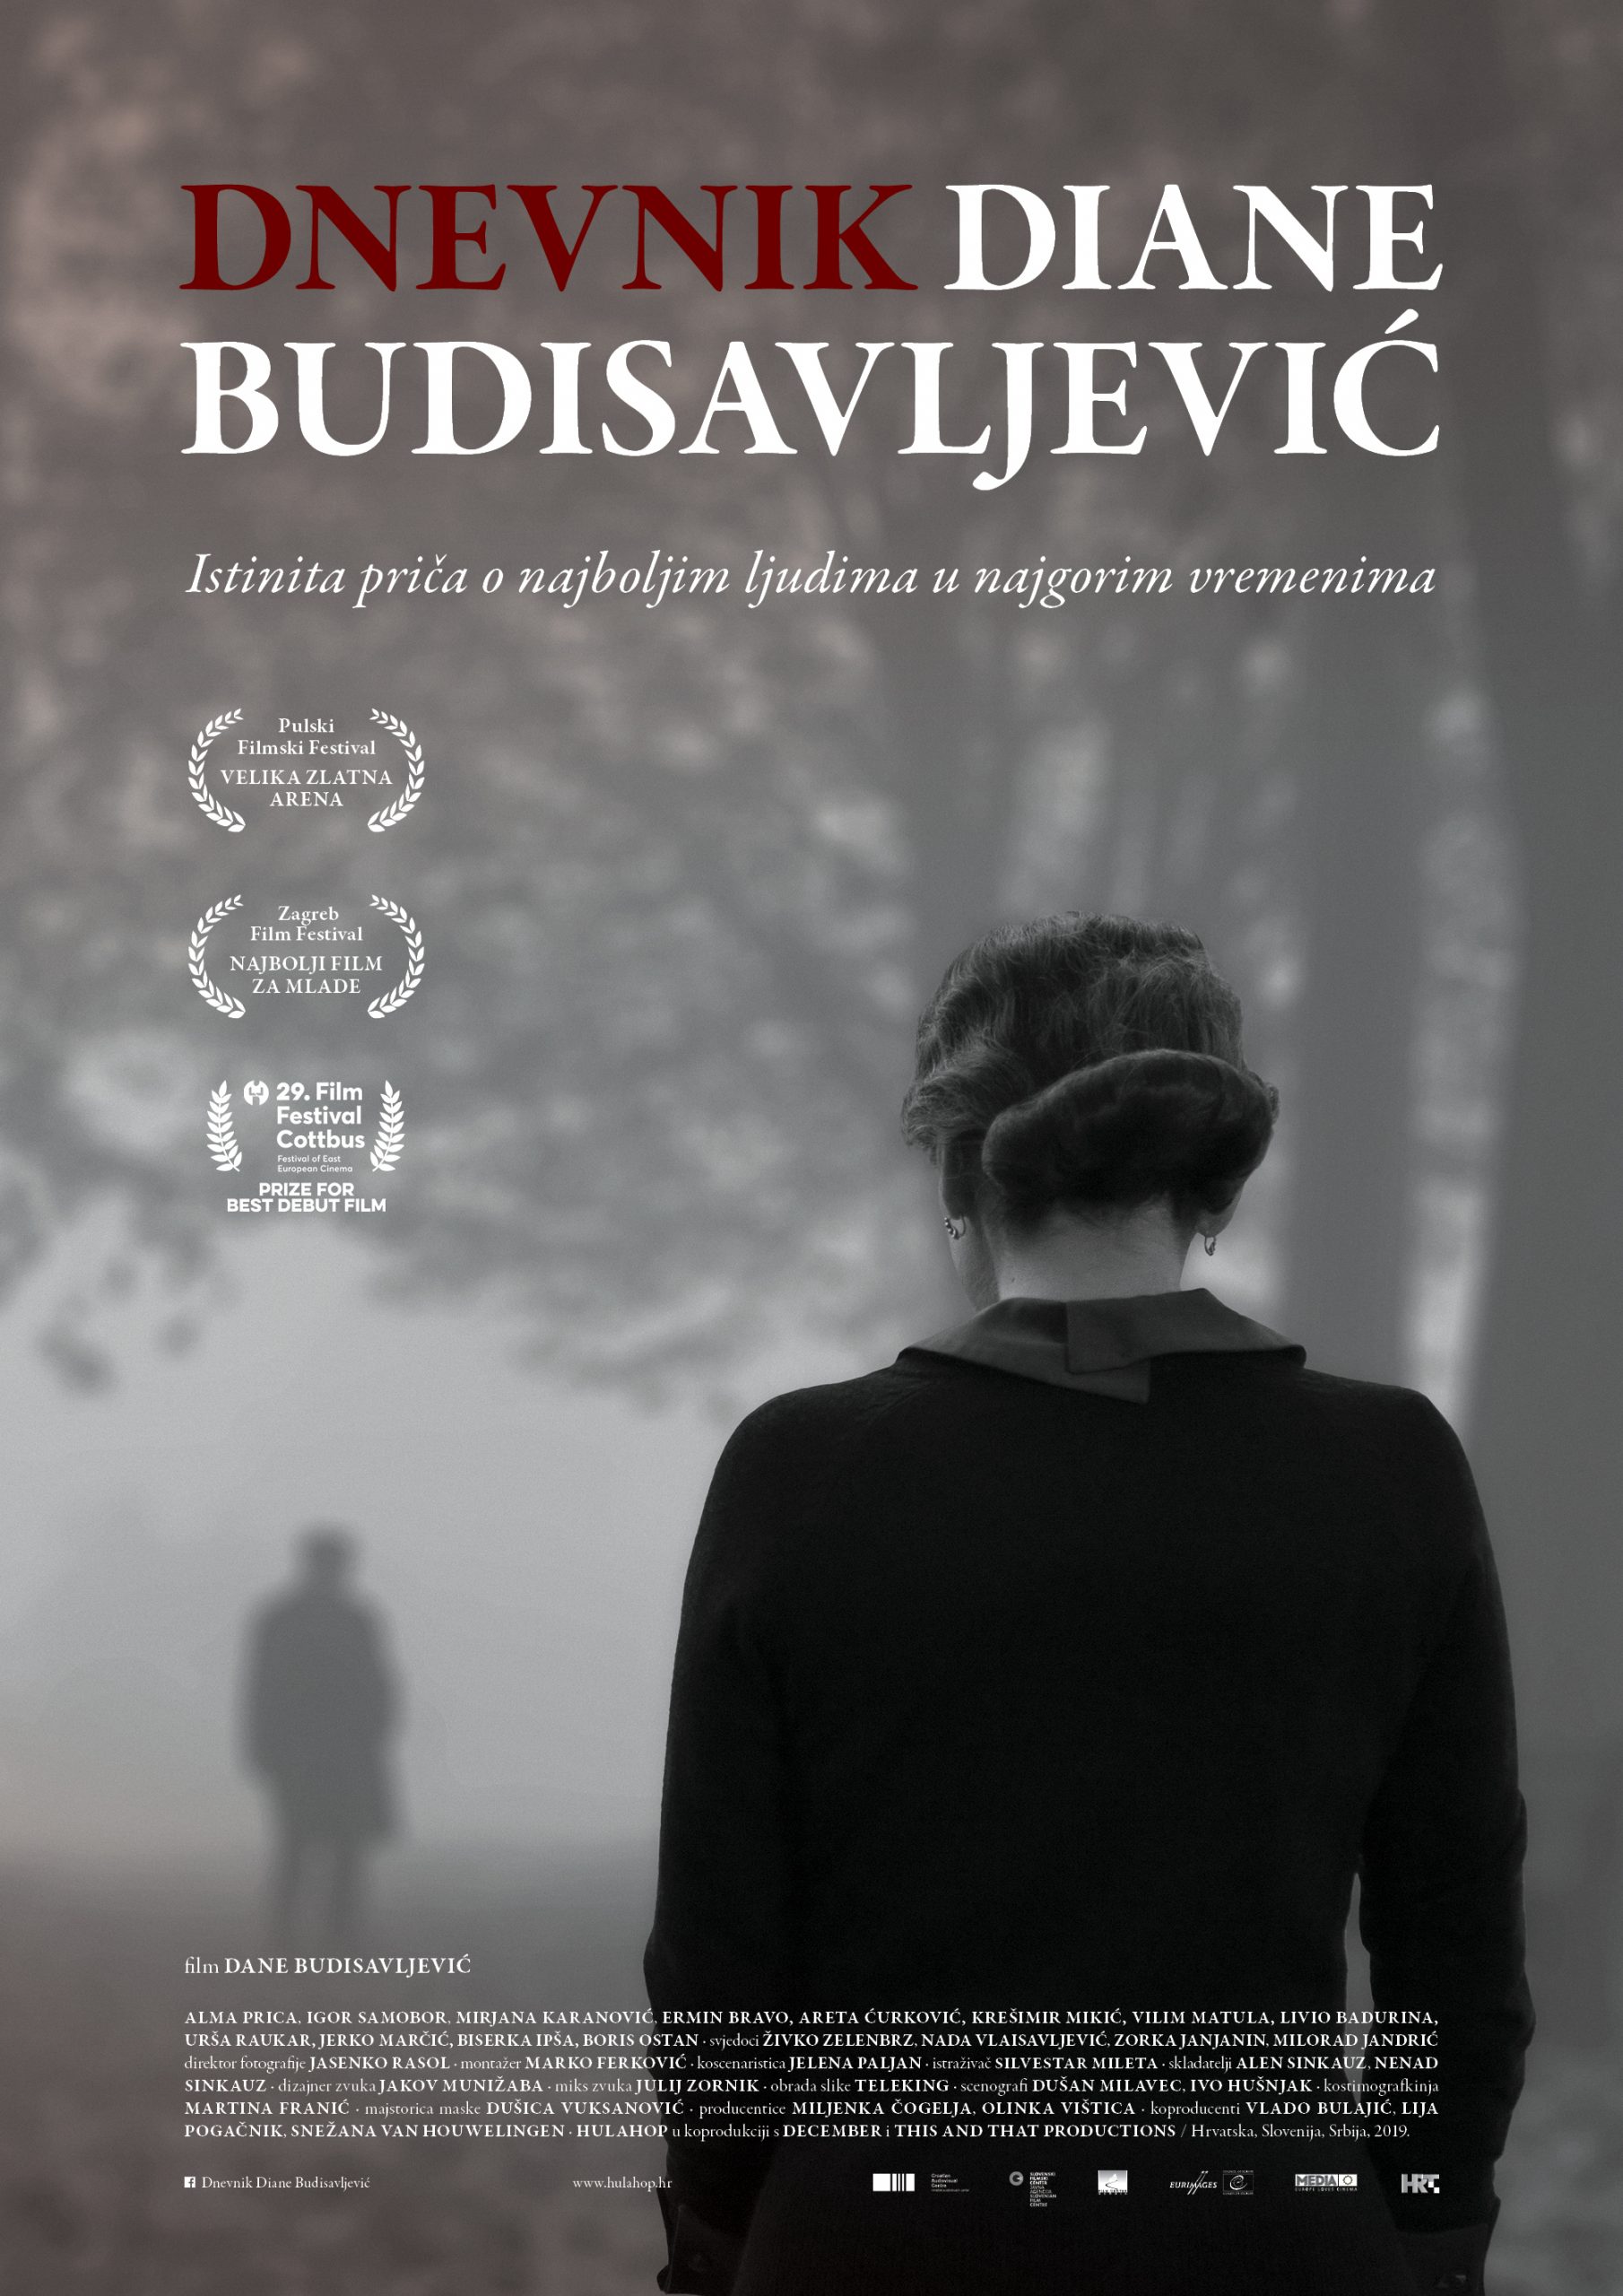 Televizijska premijera filma “Dnevnik Diane Budisavljević” 22. aprila na RTS-u 1